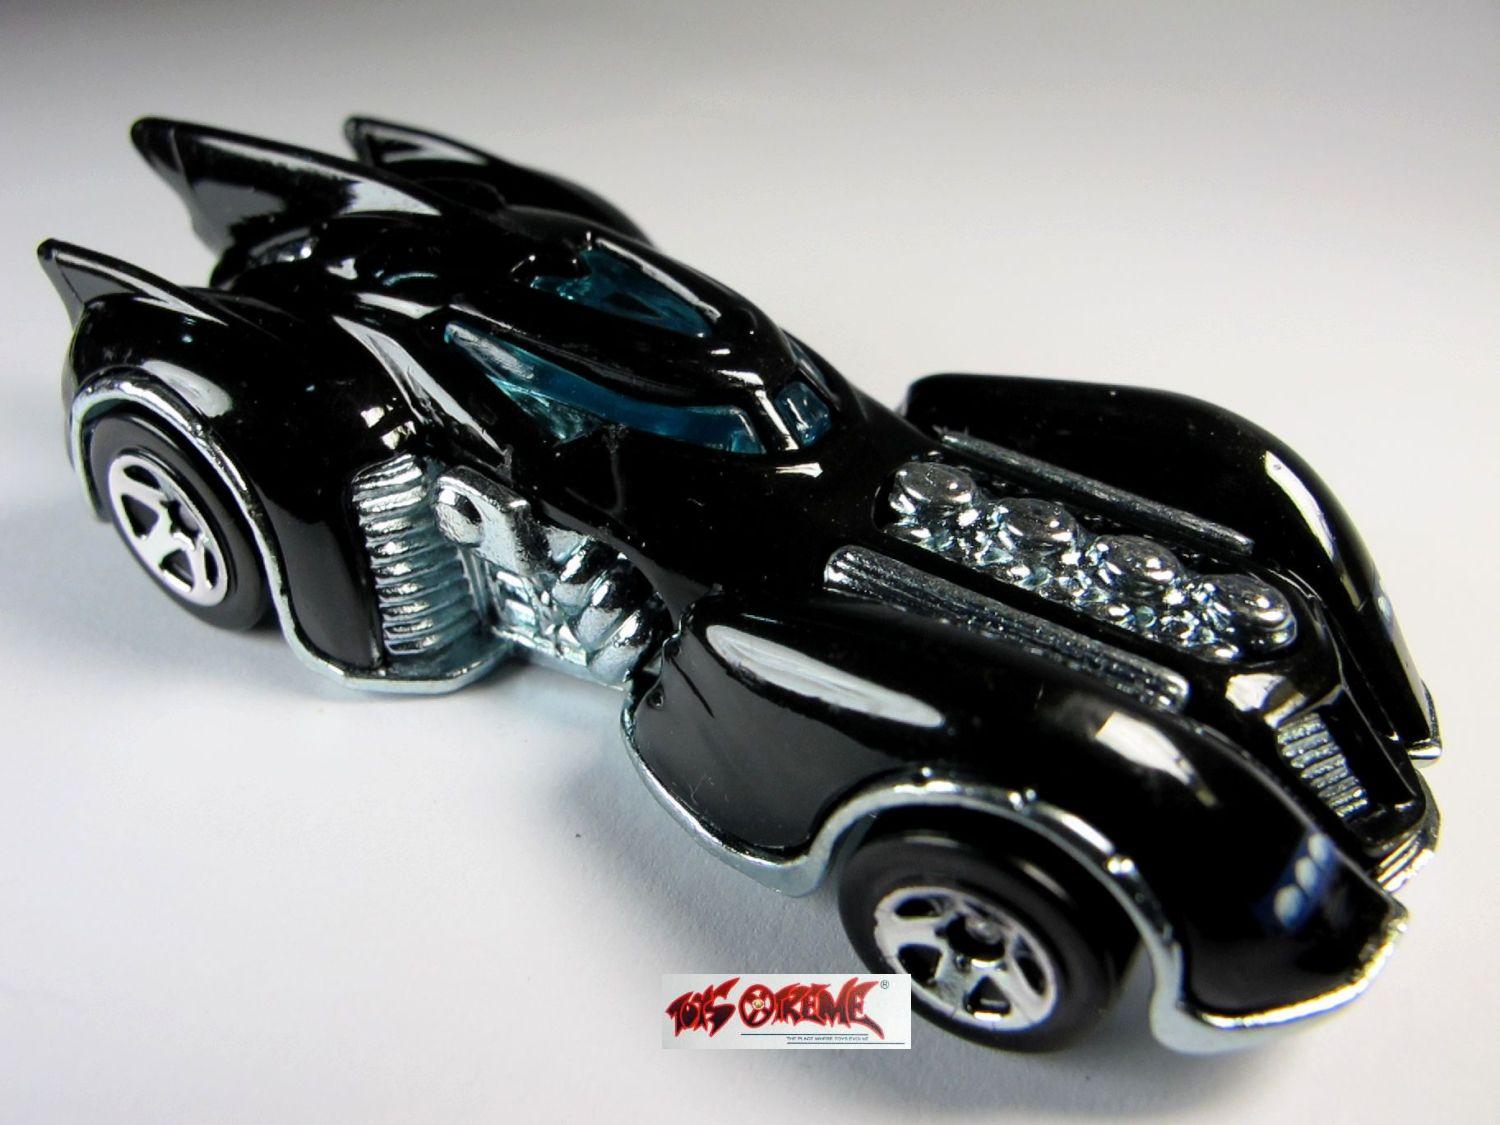 batman arkham city batmobile toy